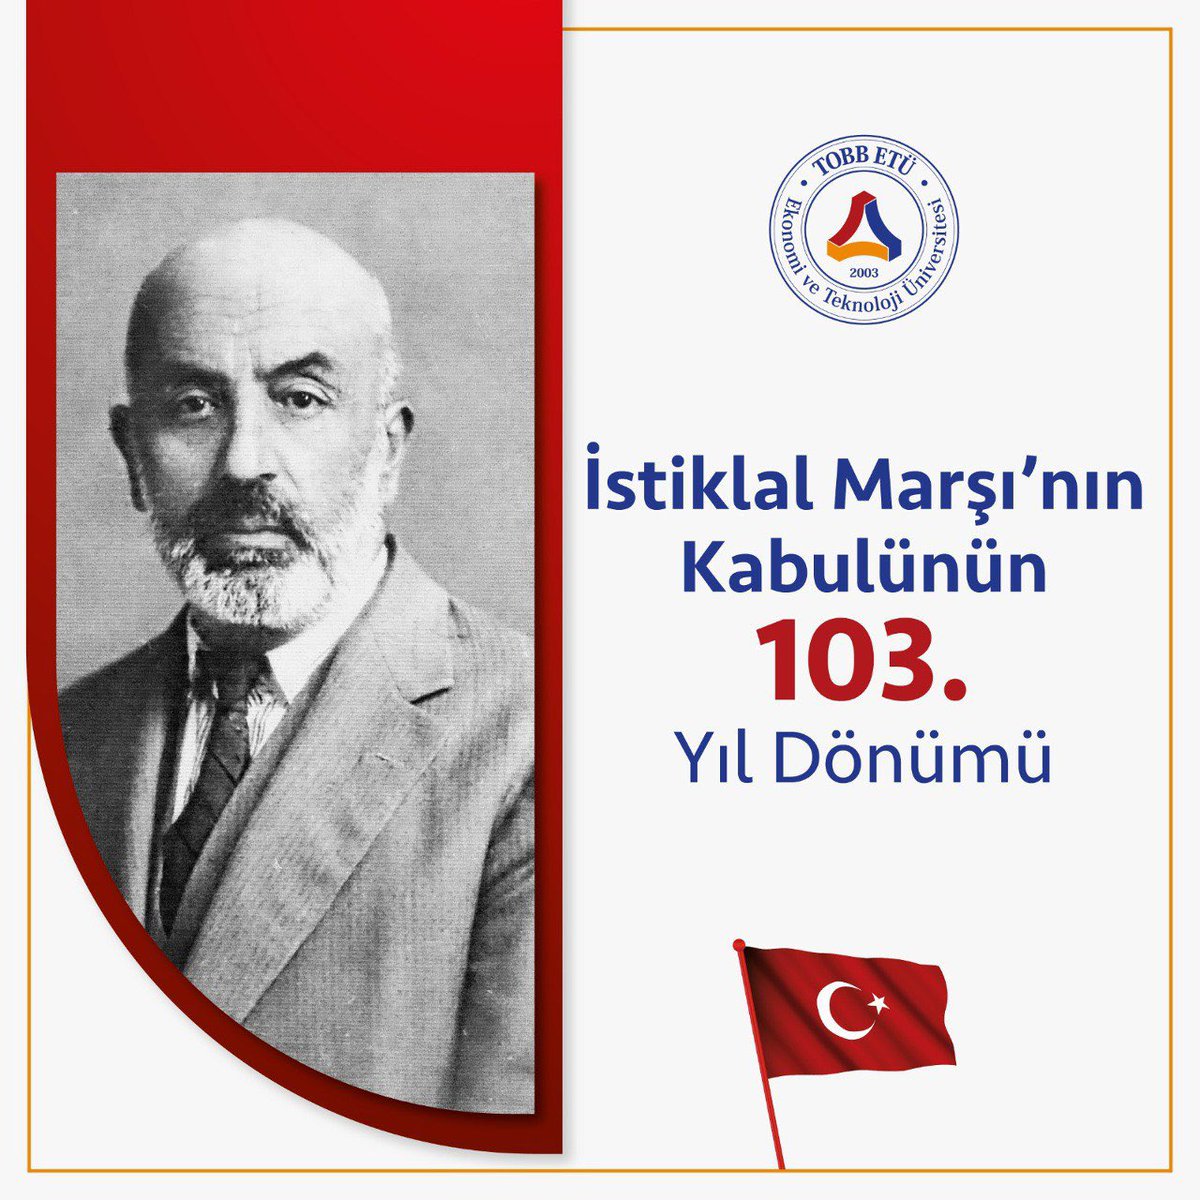 İstiklal Marşı'nın kabulünün 103. yıl dönümünde, millet olarak verdiğimiz bağımsızlık mücadelesinin ve birliğimizin en değerli simgelerinden birini anıyoruz!